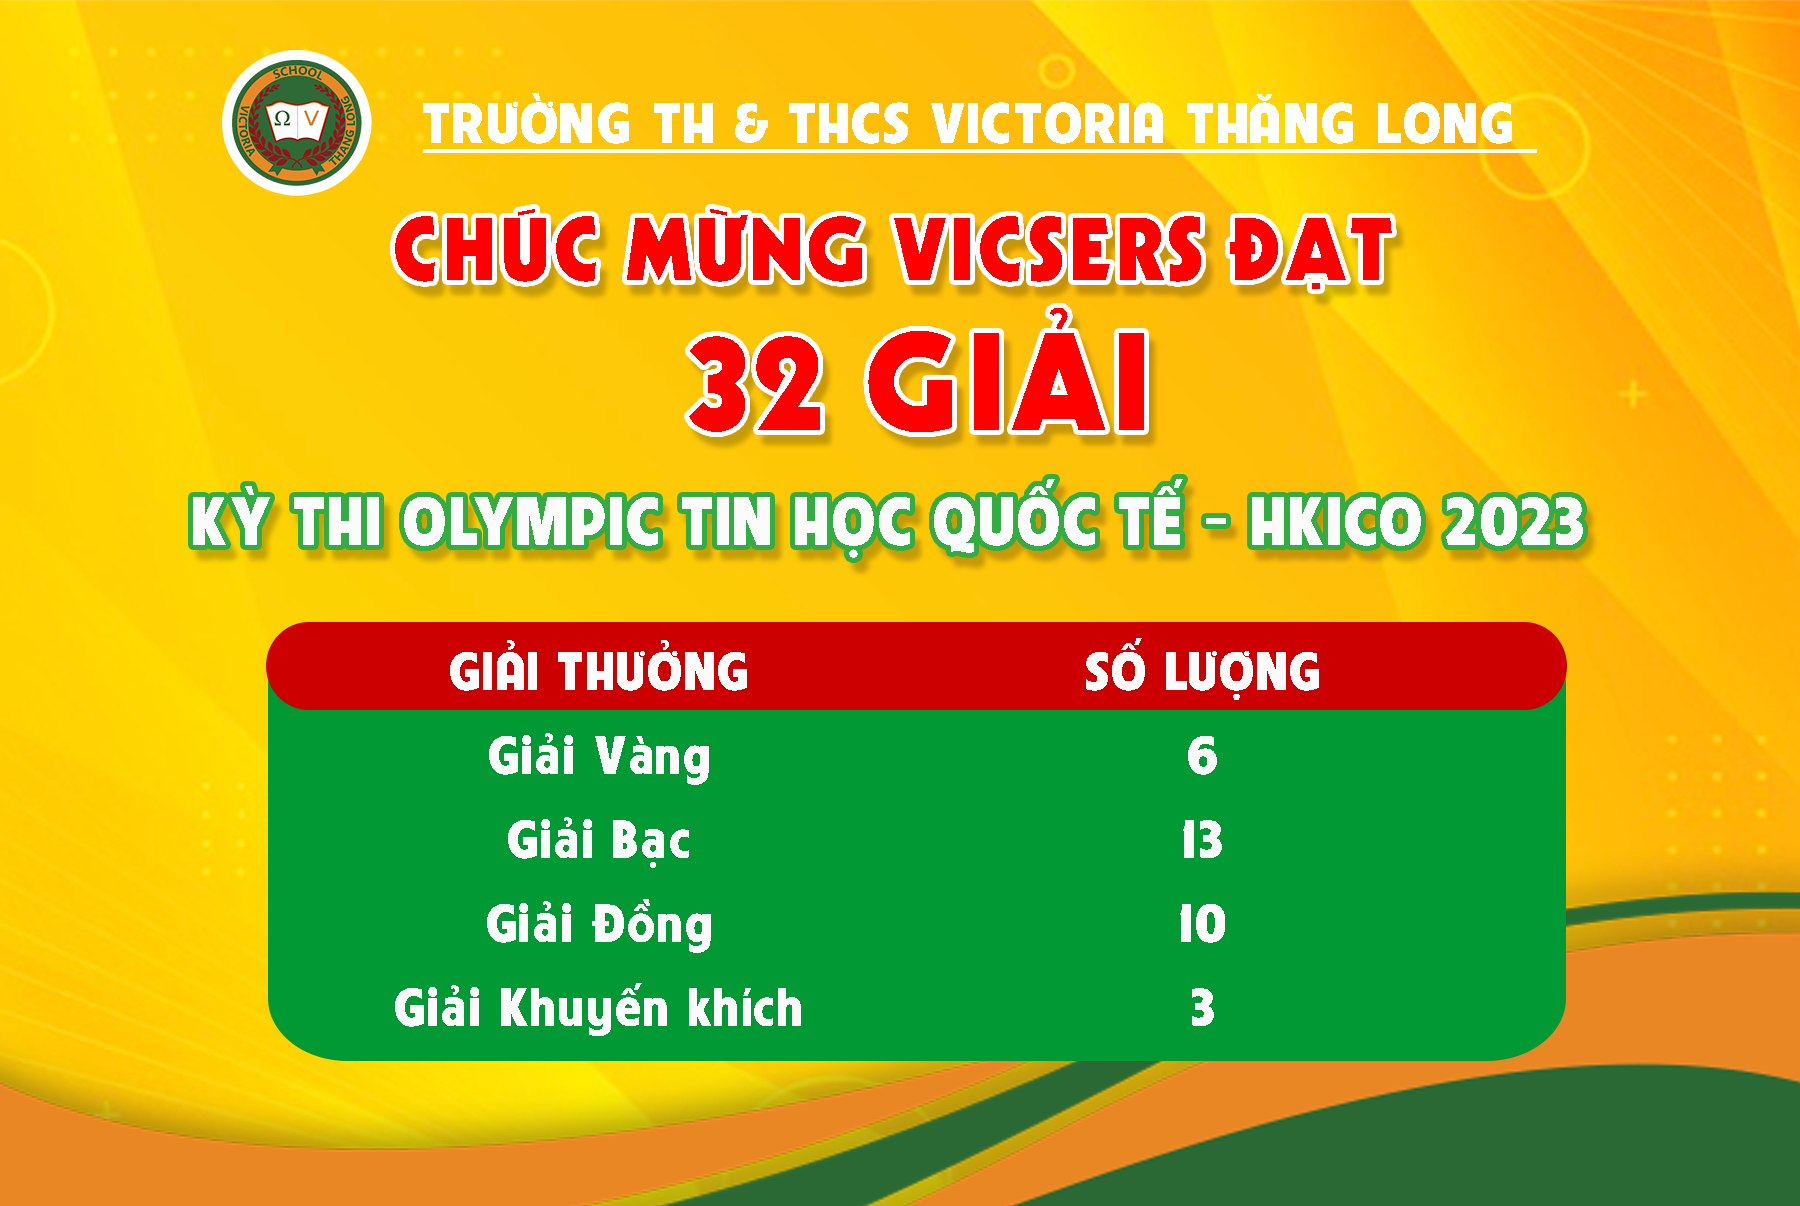 VICSERS CHINH PHỤC KỲ THI OLYMPIC TIN HỌC QUỐC TẾ HKICO 2023 VỚI 32 GIẢI